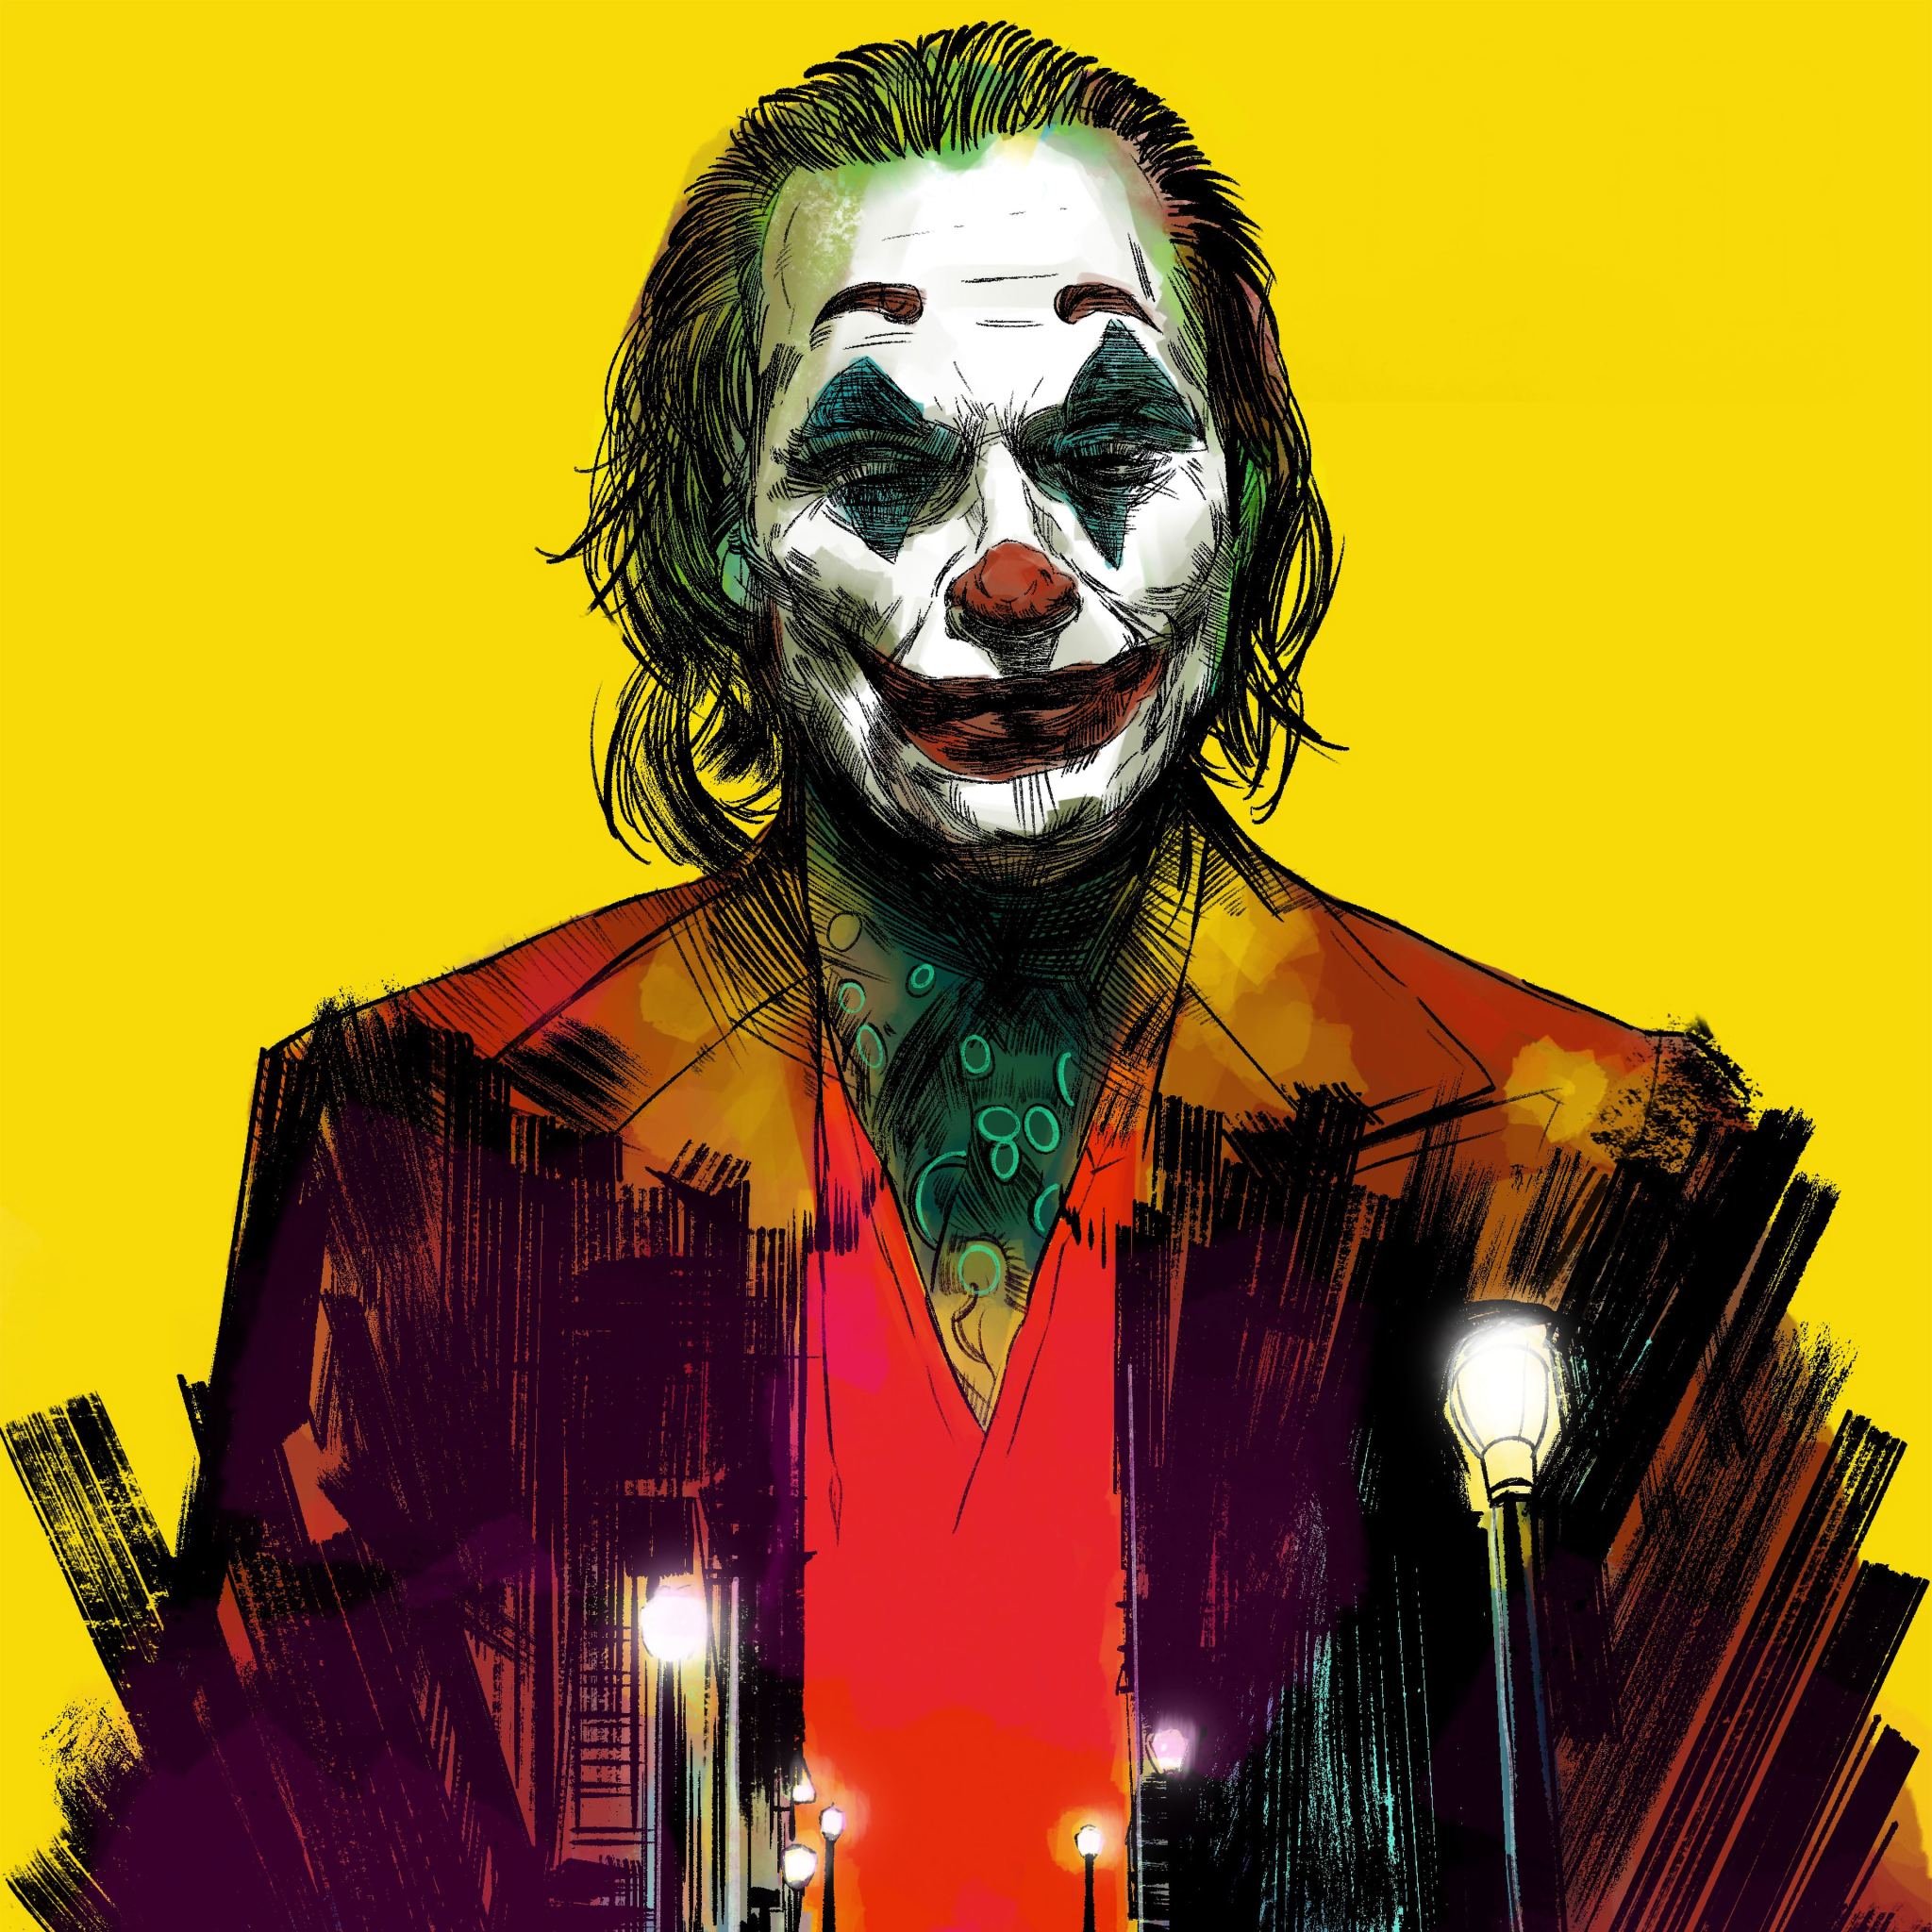 Joker Wallpaper 4K / Joker The Dark Knight 4k, HD Movies, 4k Wallpapers ...